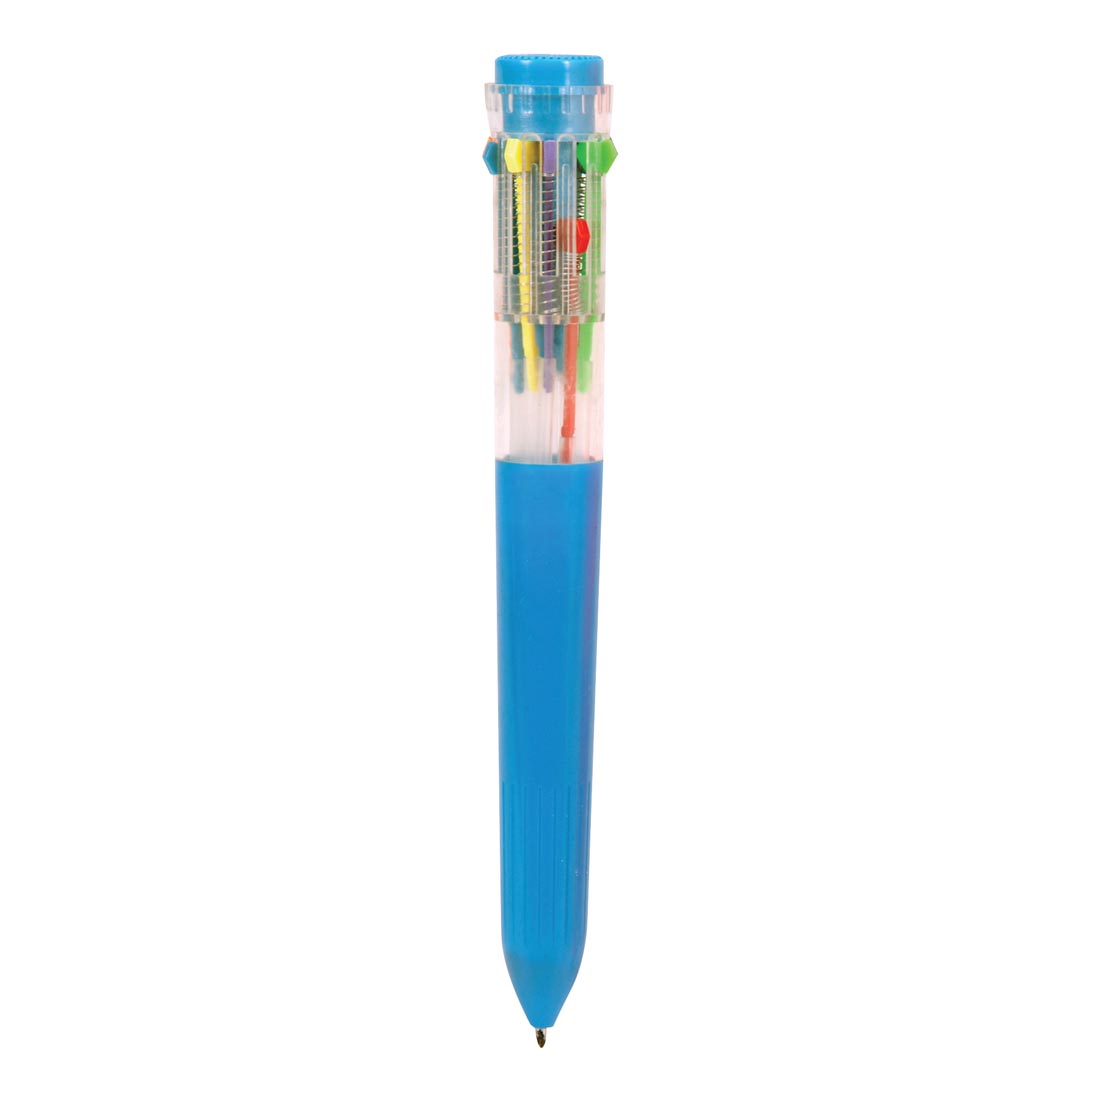 Ten Color Ball-Point Pen